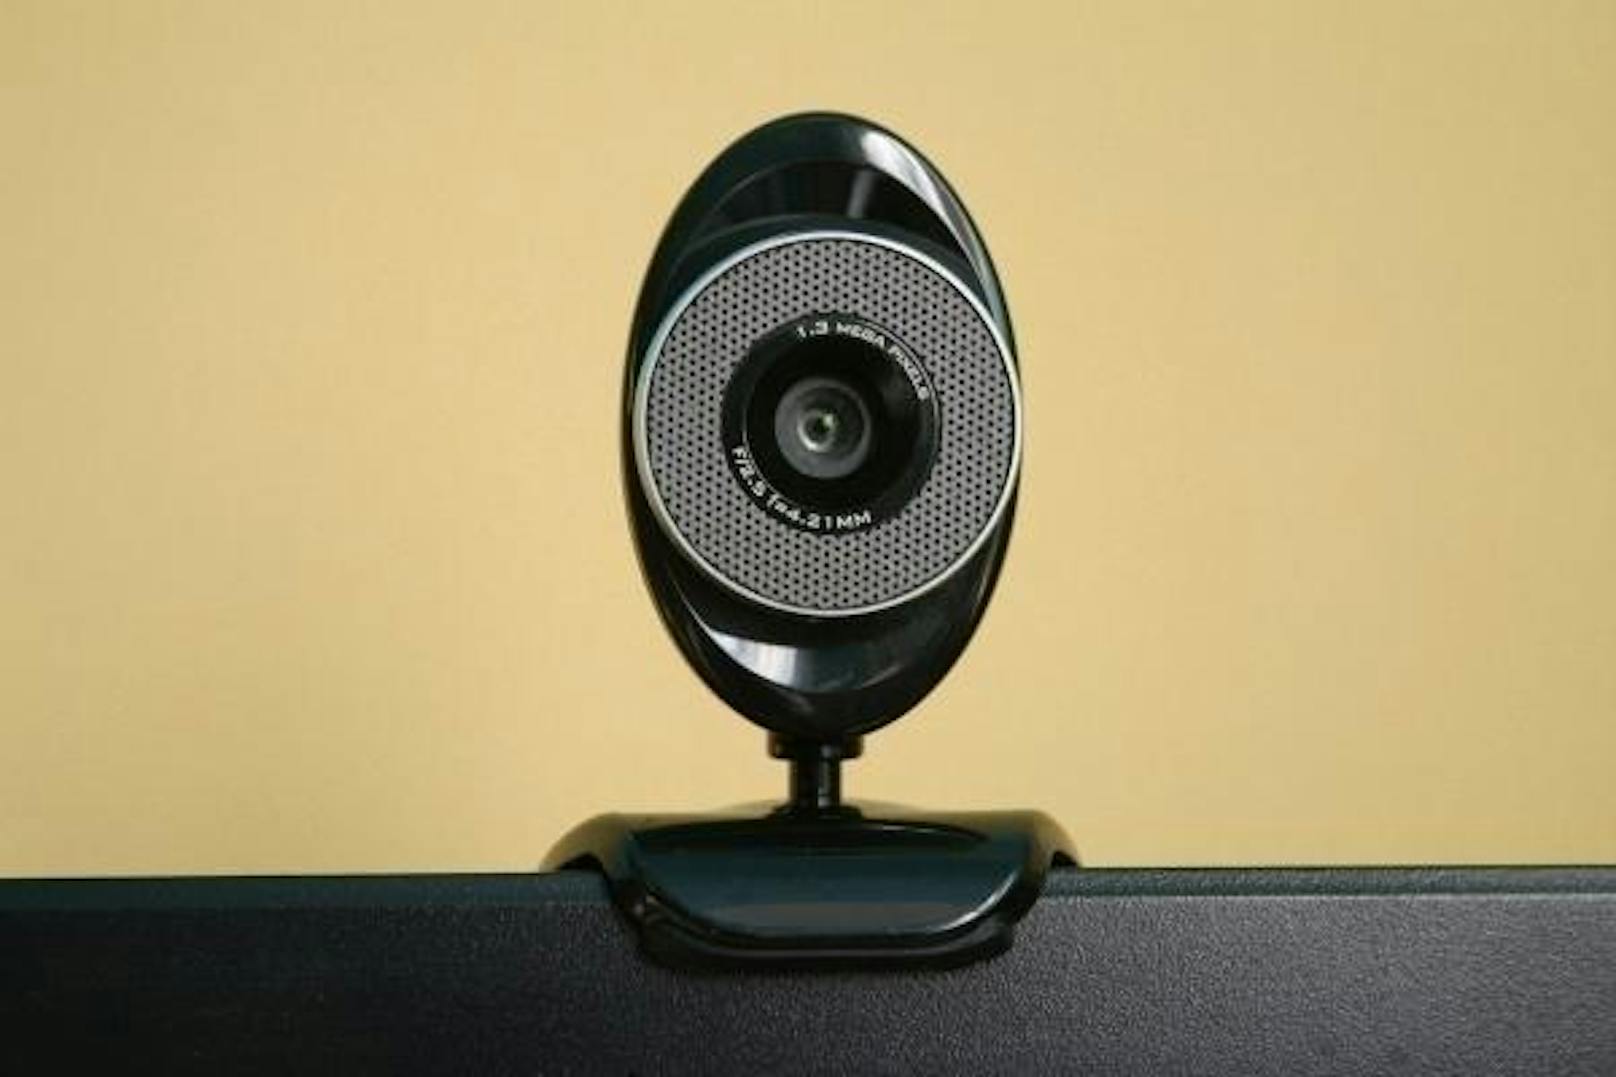 Anschließend müssen einem virtuellen Grenzbeamten über eine Webcam verschiedene Fragen beantwortet werden.